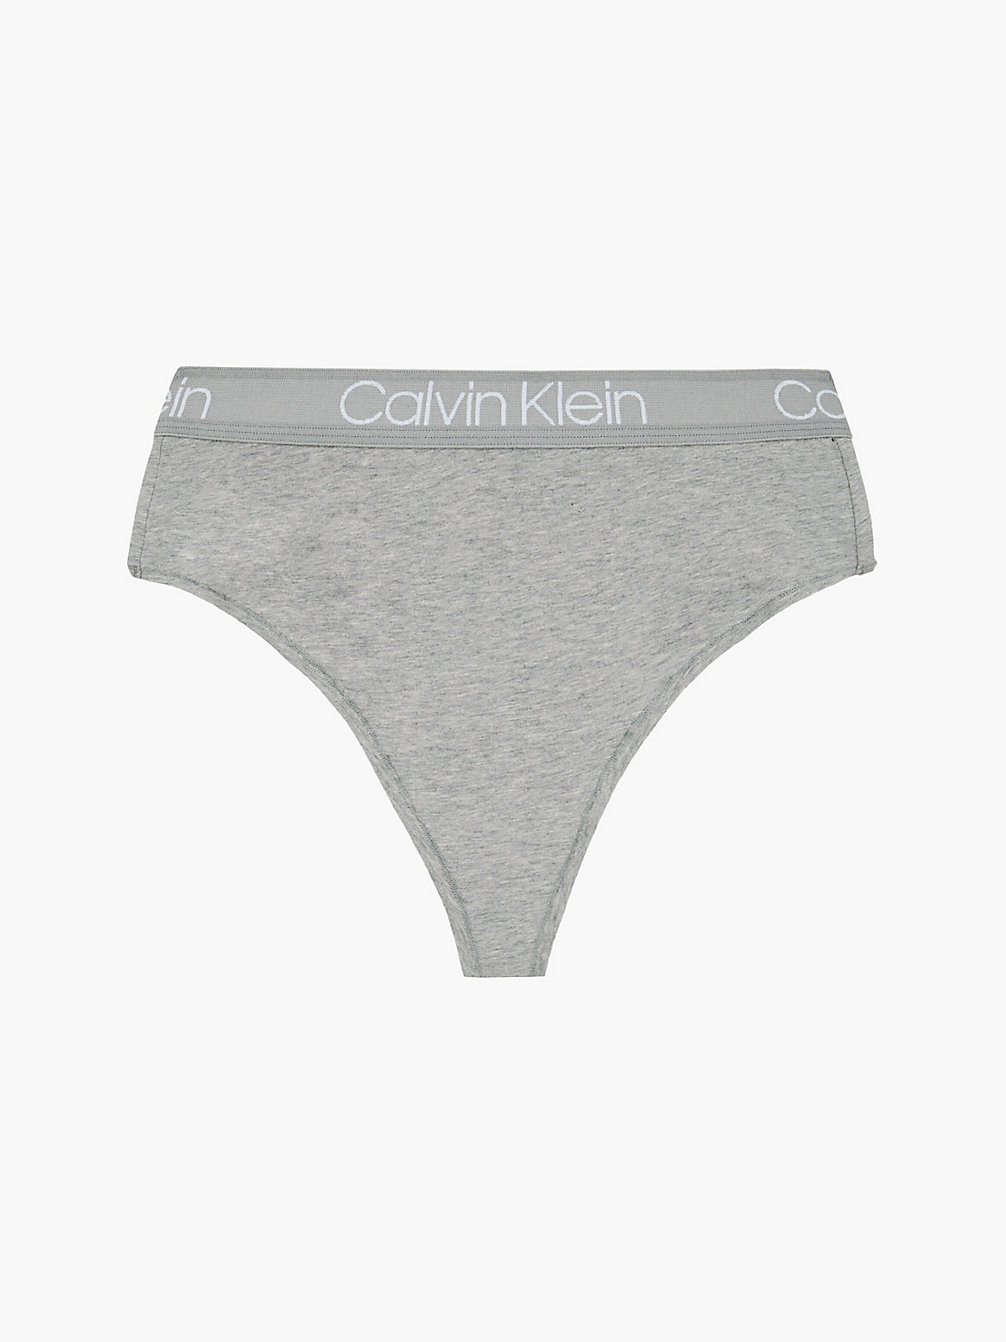 GREY HEATHER High-Waist-String - Body undefined Damen Calvin Klein